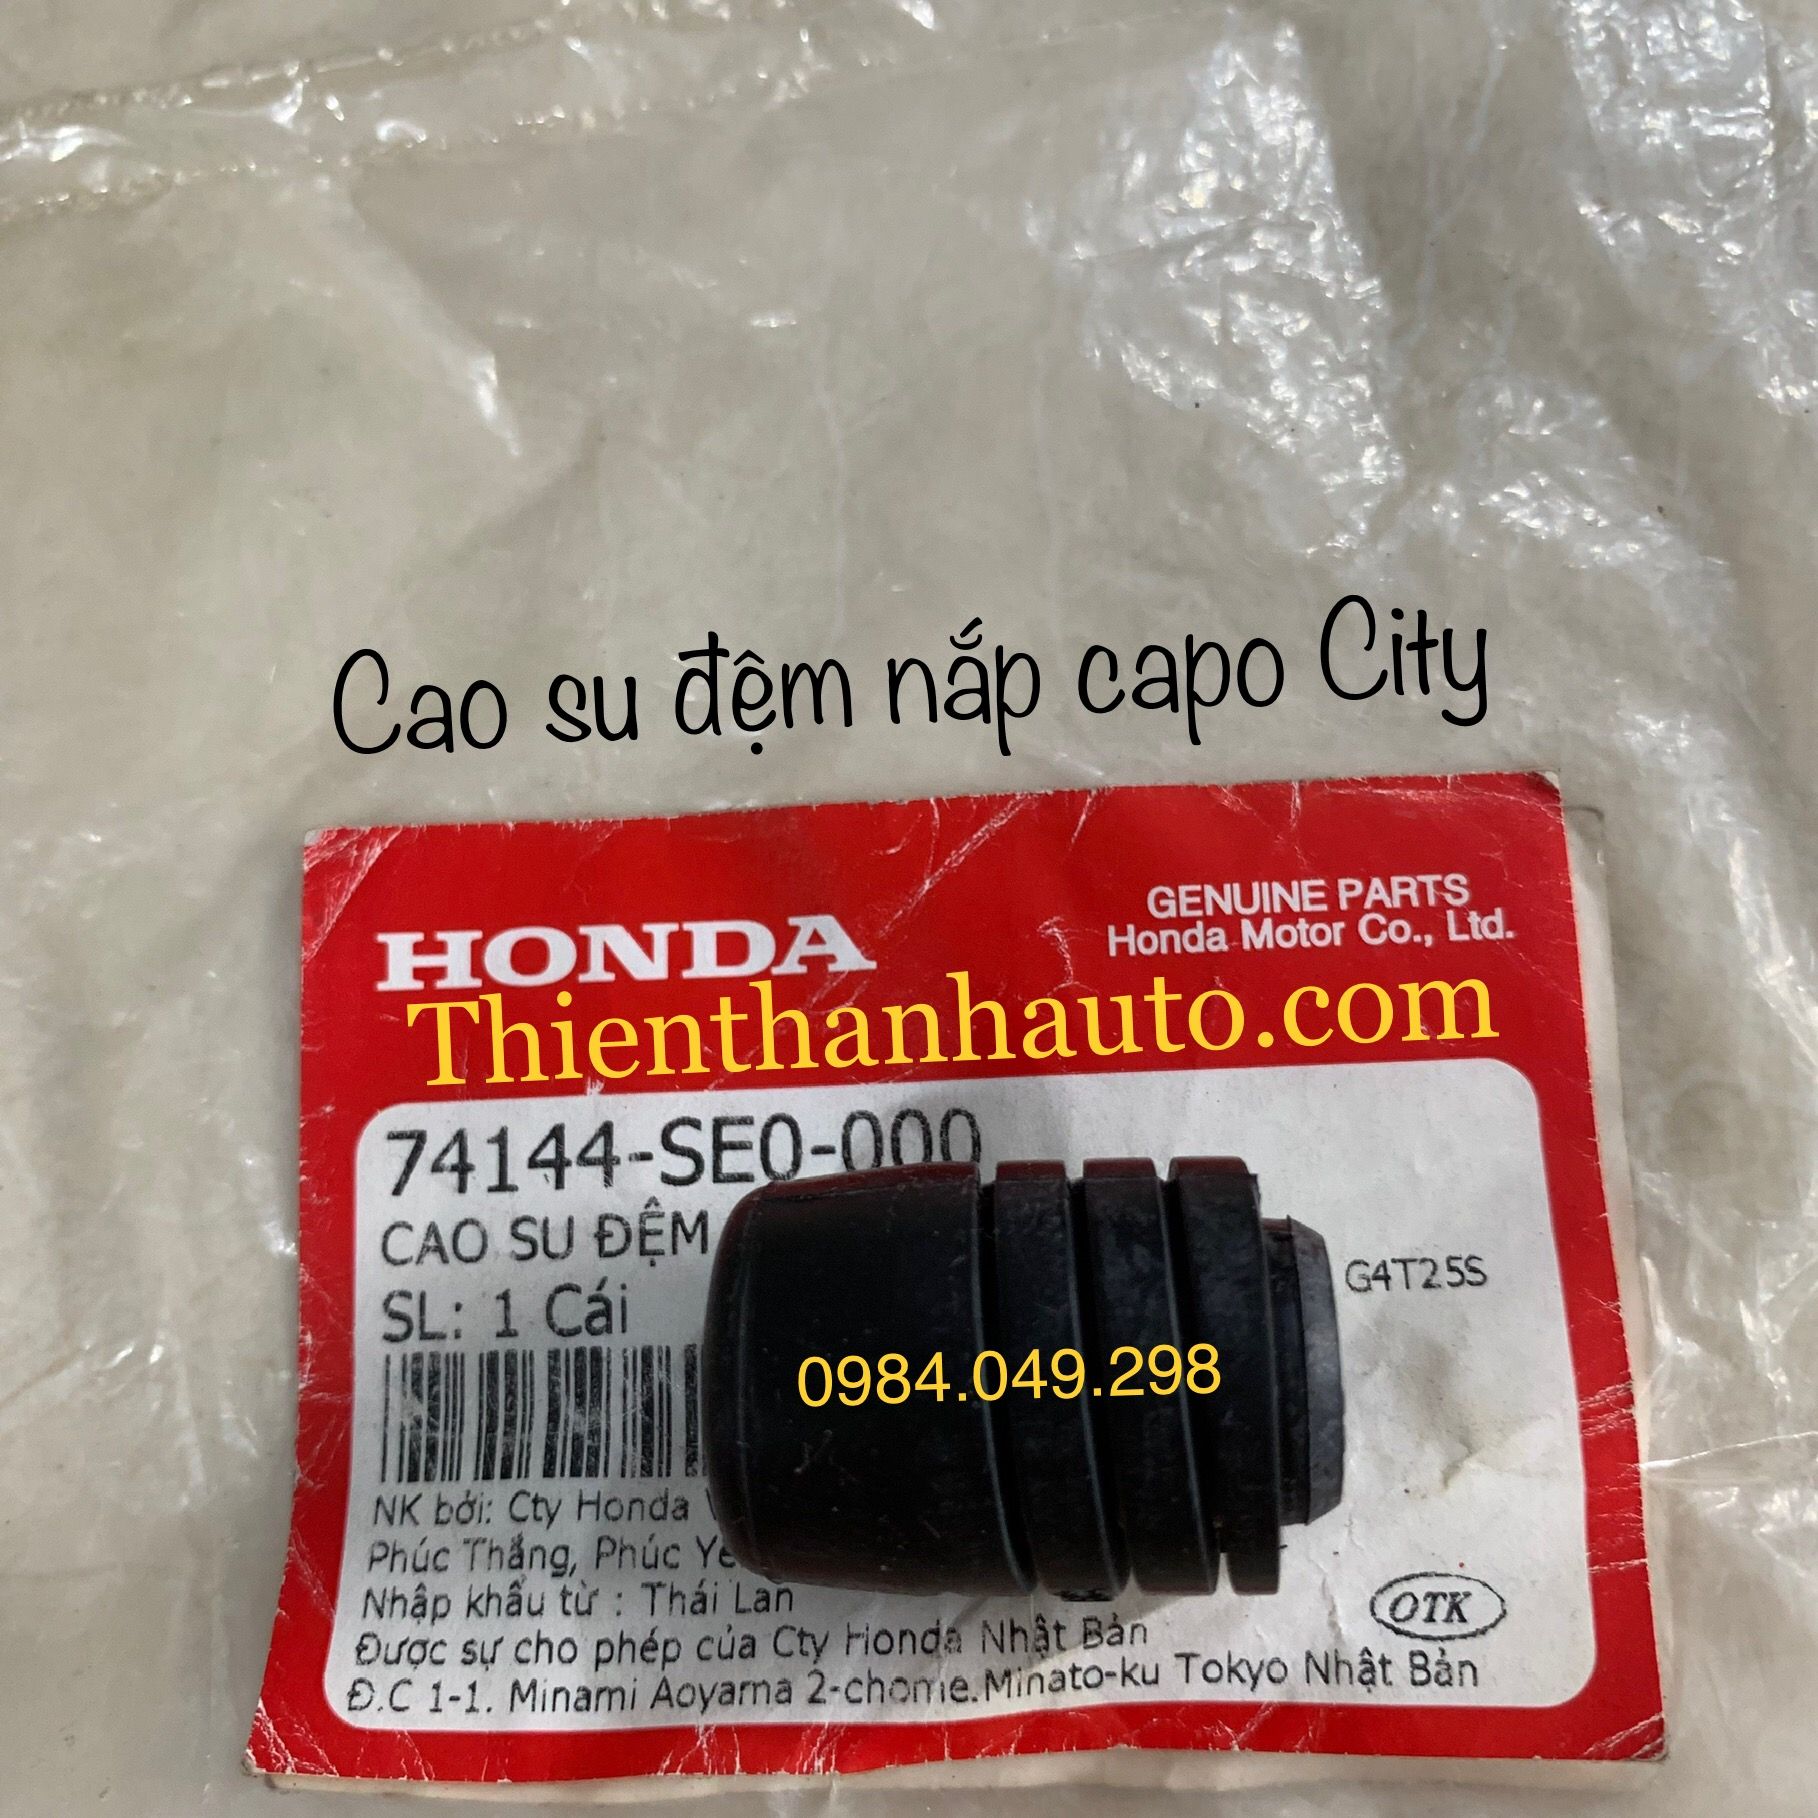 Cao su đệm giảm chấn nắp capo Honda City chính hãng - 74144SE0000 - Thienthanhauto.com